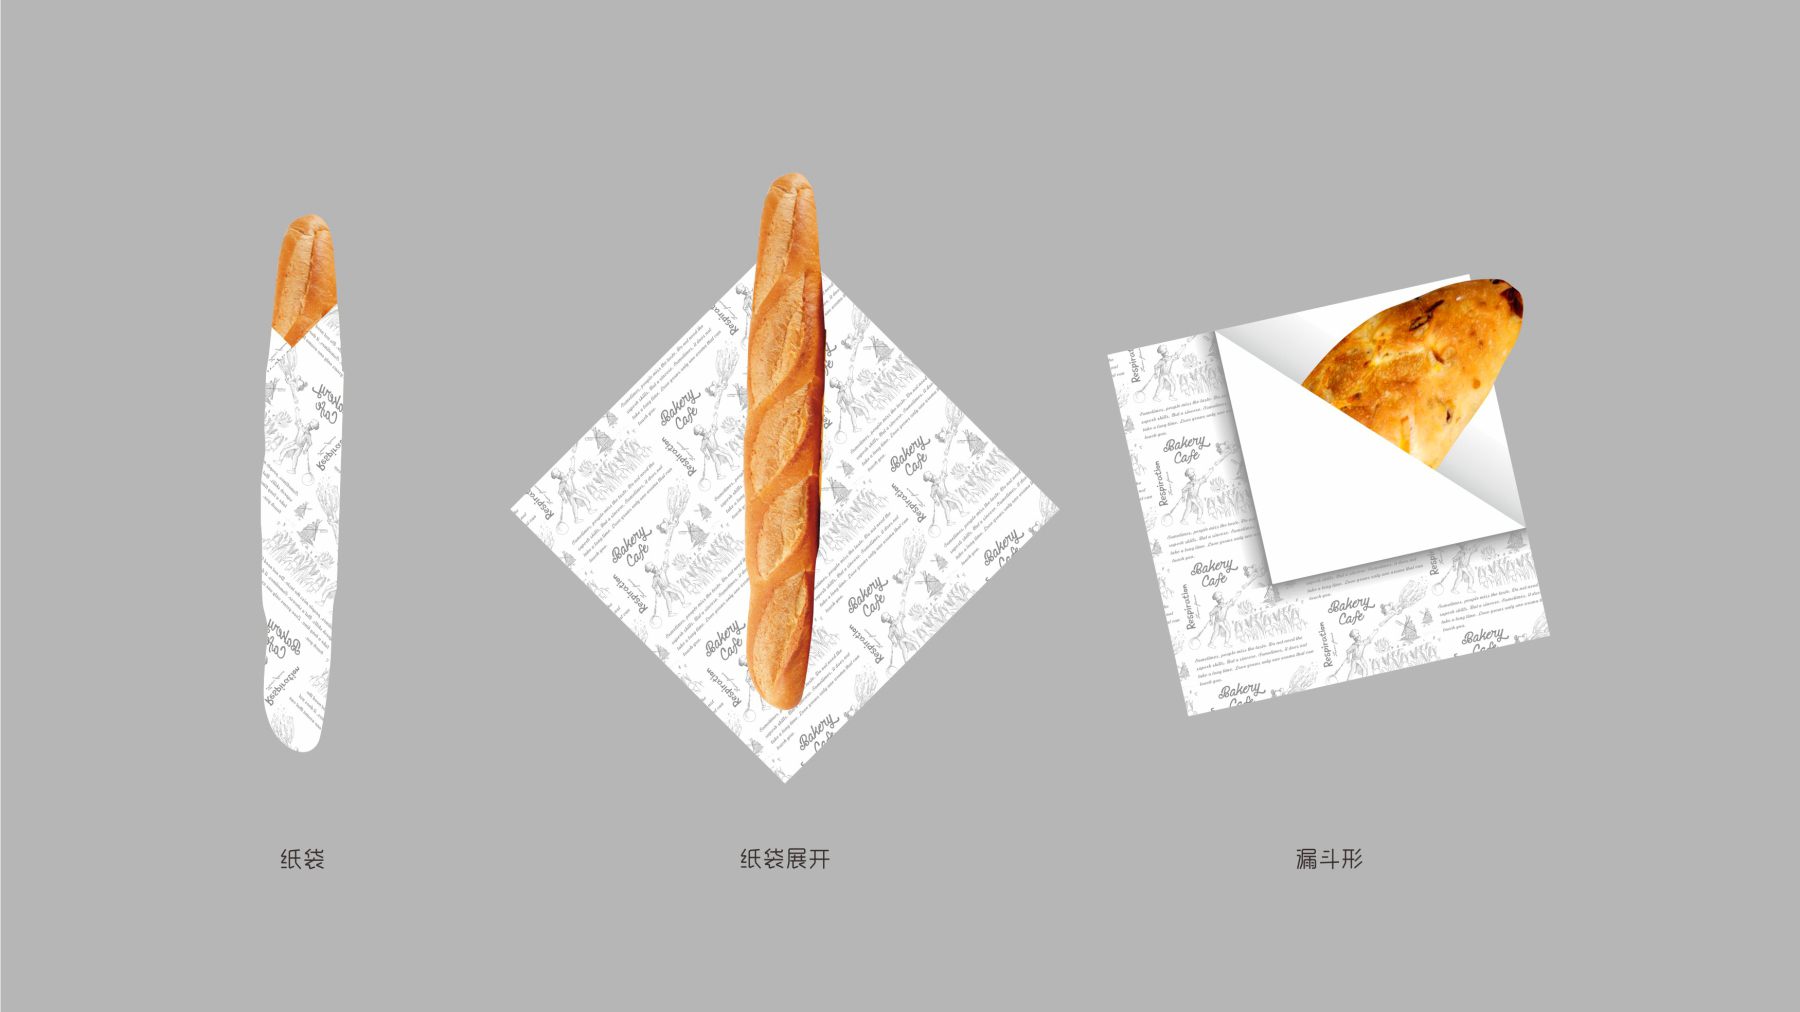 法国烘焙集团品牌包装纸设计